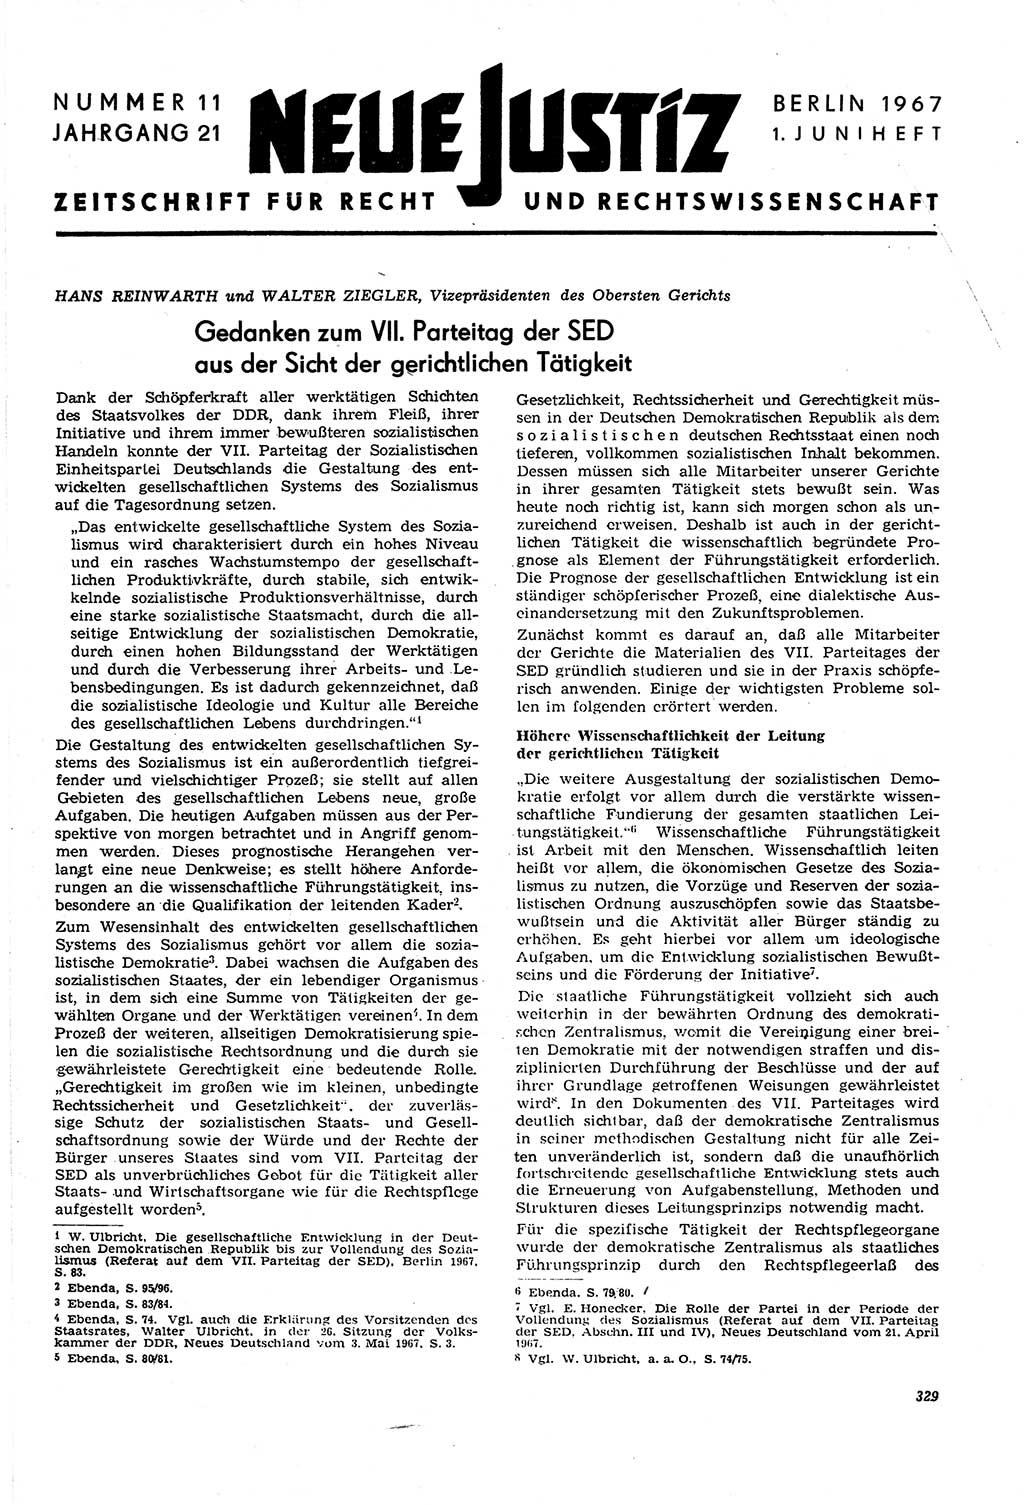 Neue Justiz (NJ), Zeitschrift für Recht und Rechtswissenschaft [Deutsche Demokratische Republik (DDR)], 21. Jahrgang 1967, Seite 329 (NJ DDR 1967, S. 329)